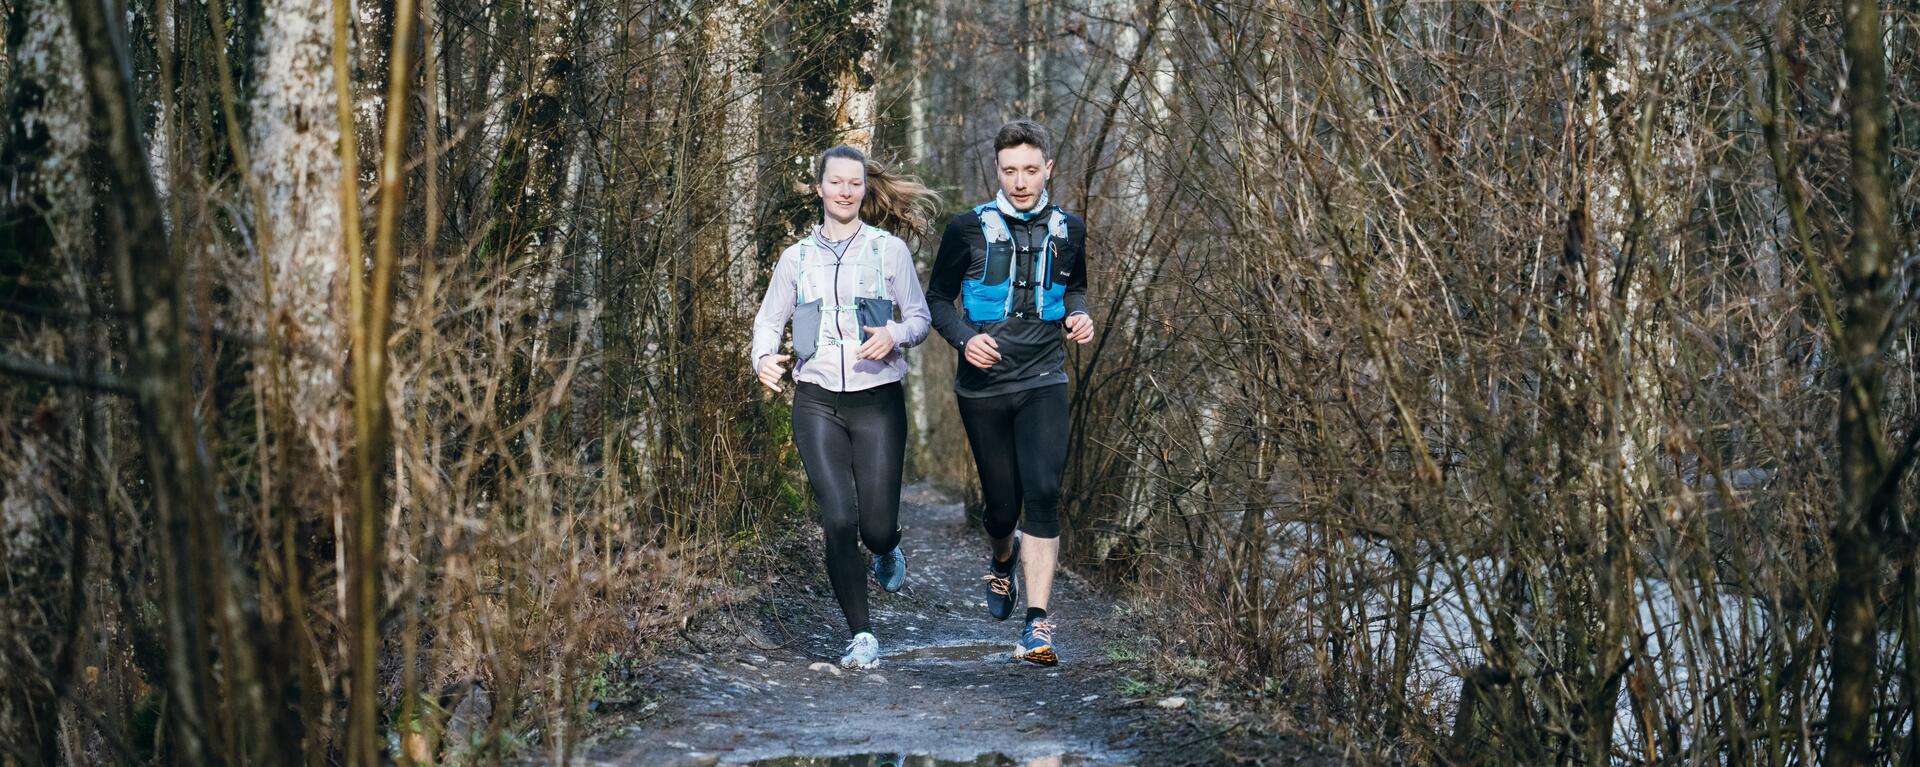 Mężczyzna i kobieta biegną w lesie w butach do biegania i z pasem do biegania